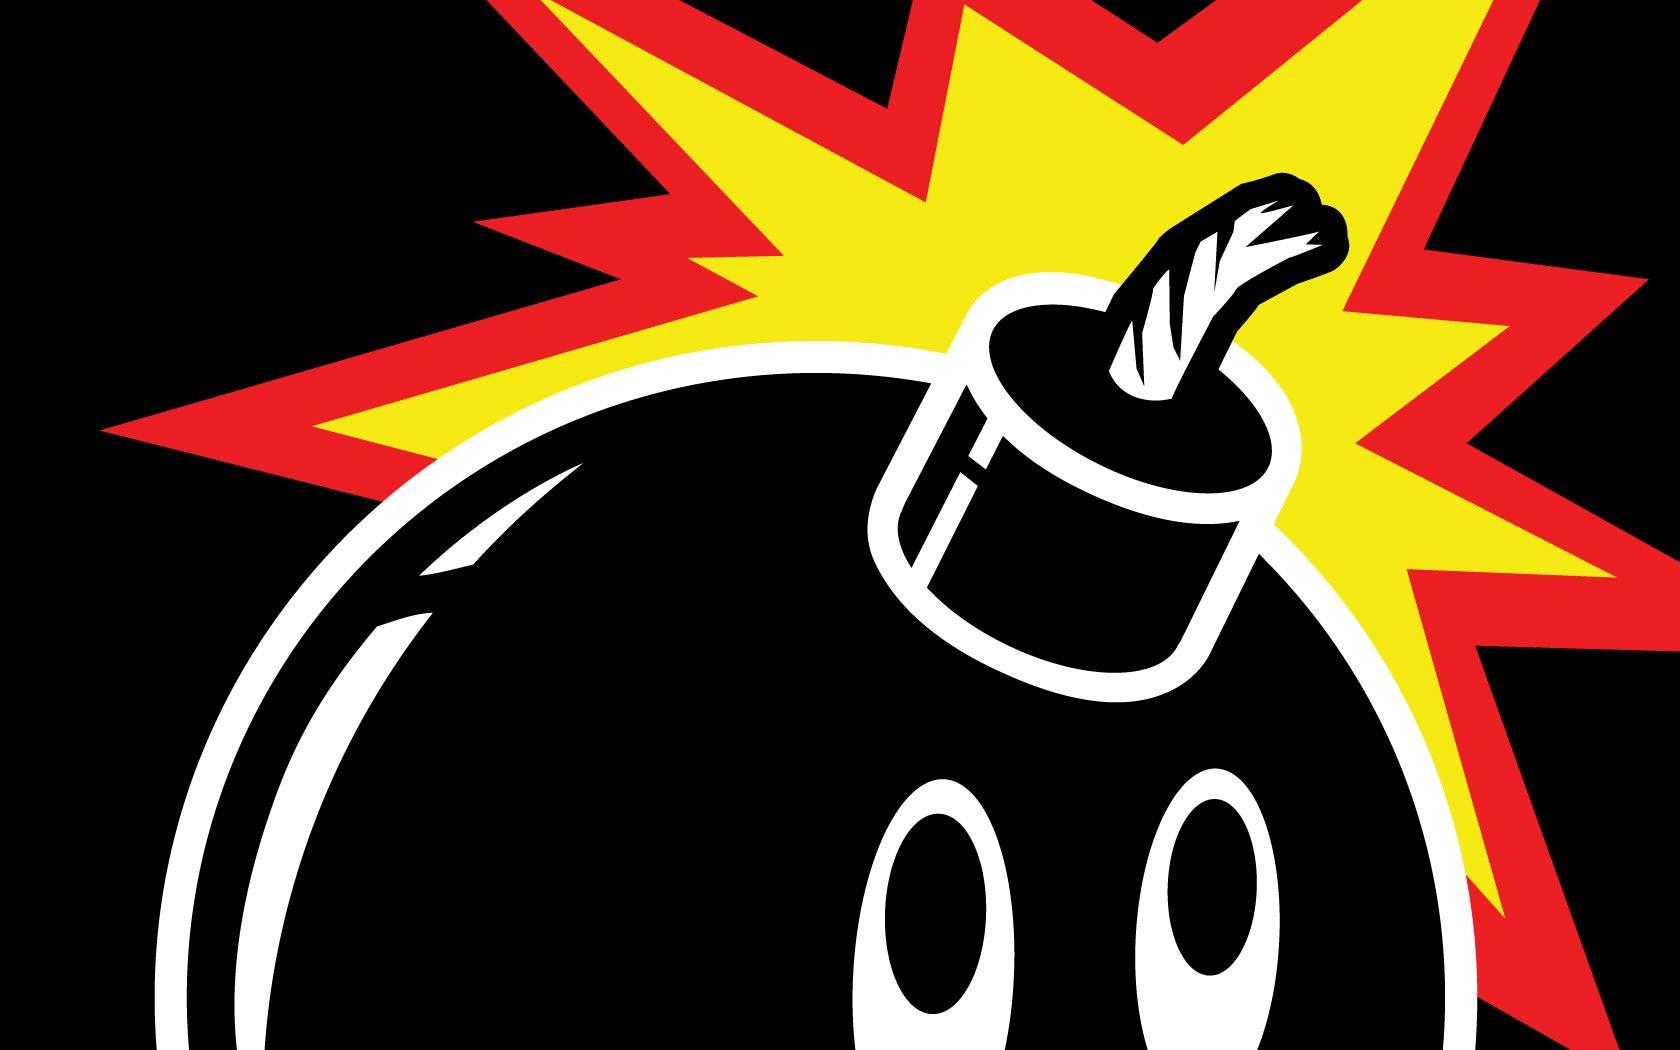 100s Bomb Logo - Best 49+ The Hundreds Backgrounds on HipWallpaper | The Hundreds ...